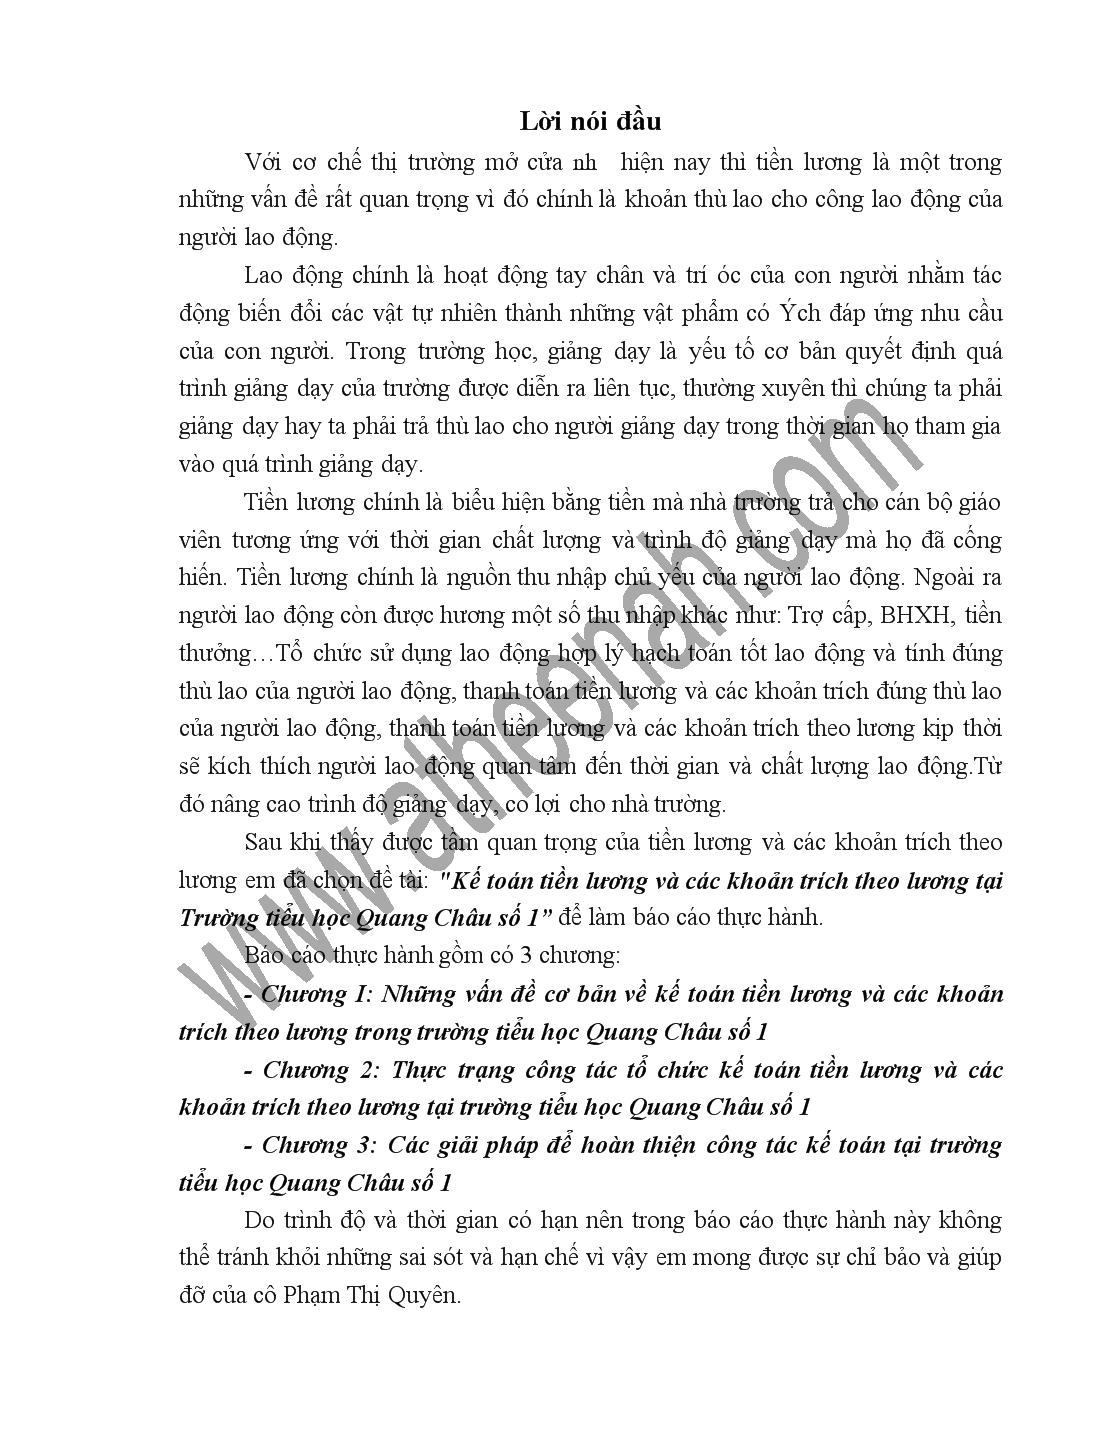 Đề tài Kế toán tiền lương và các khoản trích theo lương tại Trường tiểu học Quang Châu số 1 trang 1